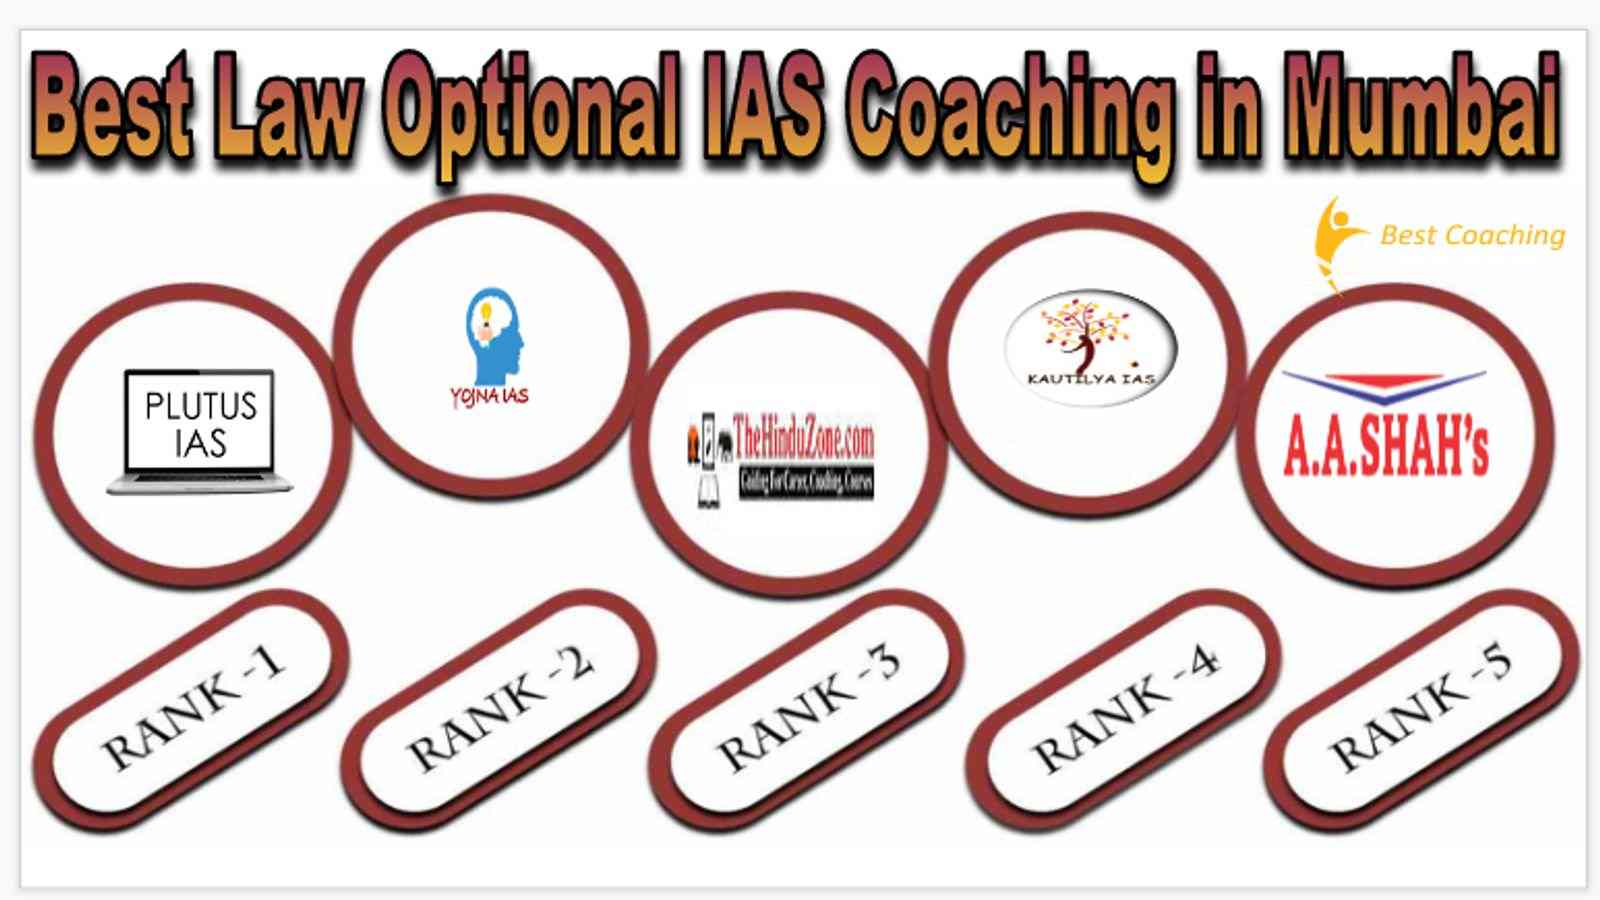 Top Law Optional IAS Coaching in Mumbai